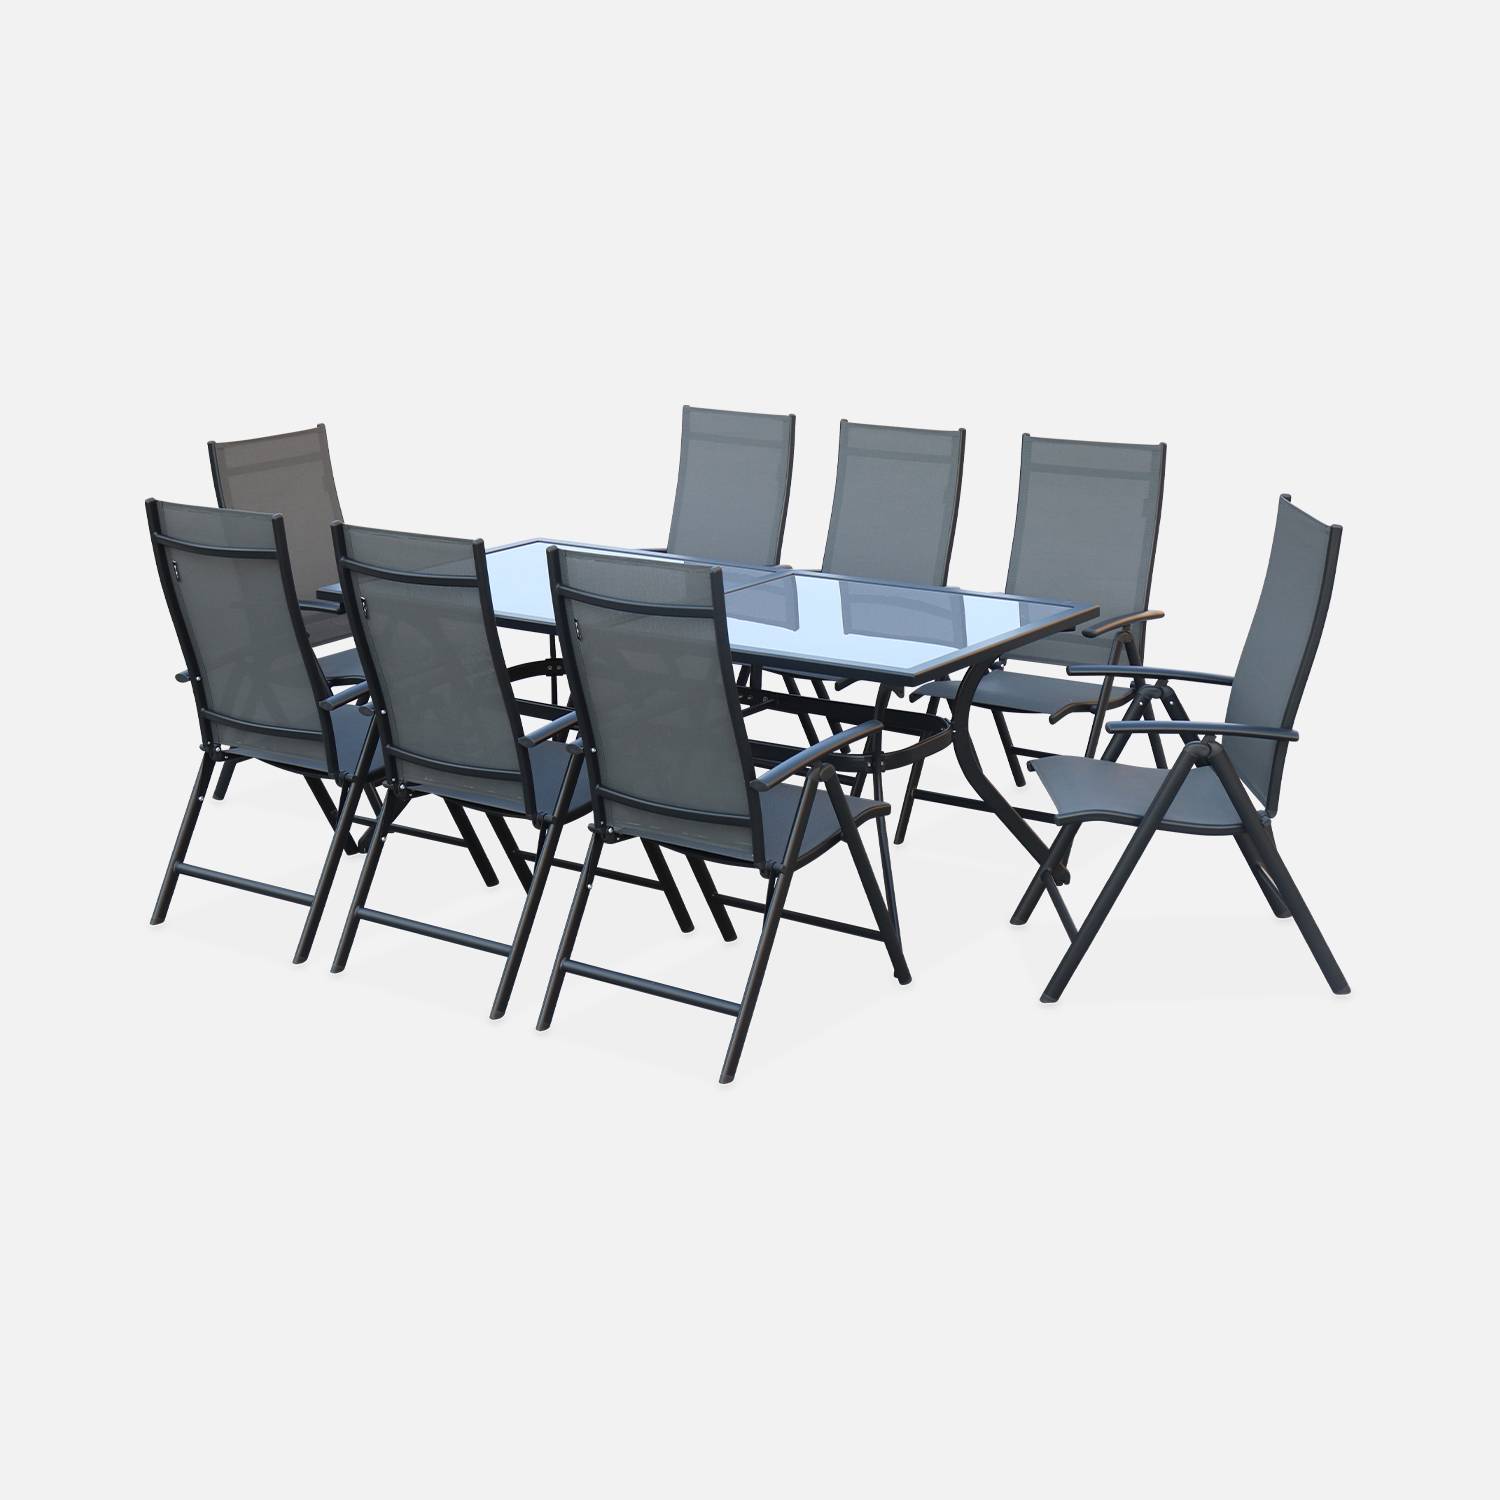 Set da giardino in alluminio e textilene - modello: Naevia - colore: Grigio, Antracite - 8 posti - 1 grande tavolo rettangolare, 8 poltrone pieghevoli Photo2